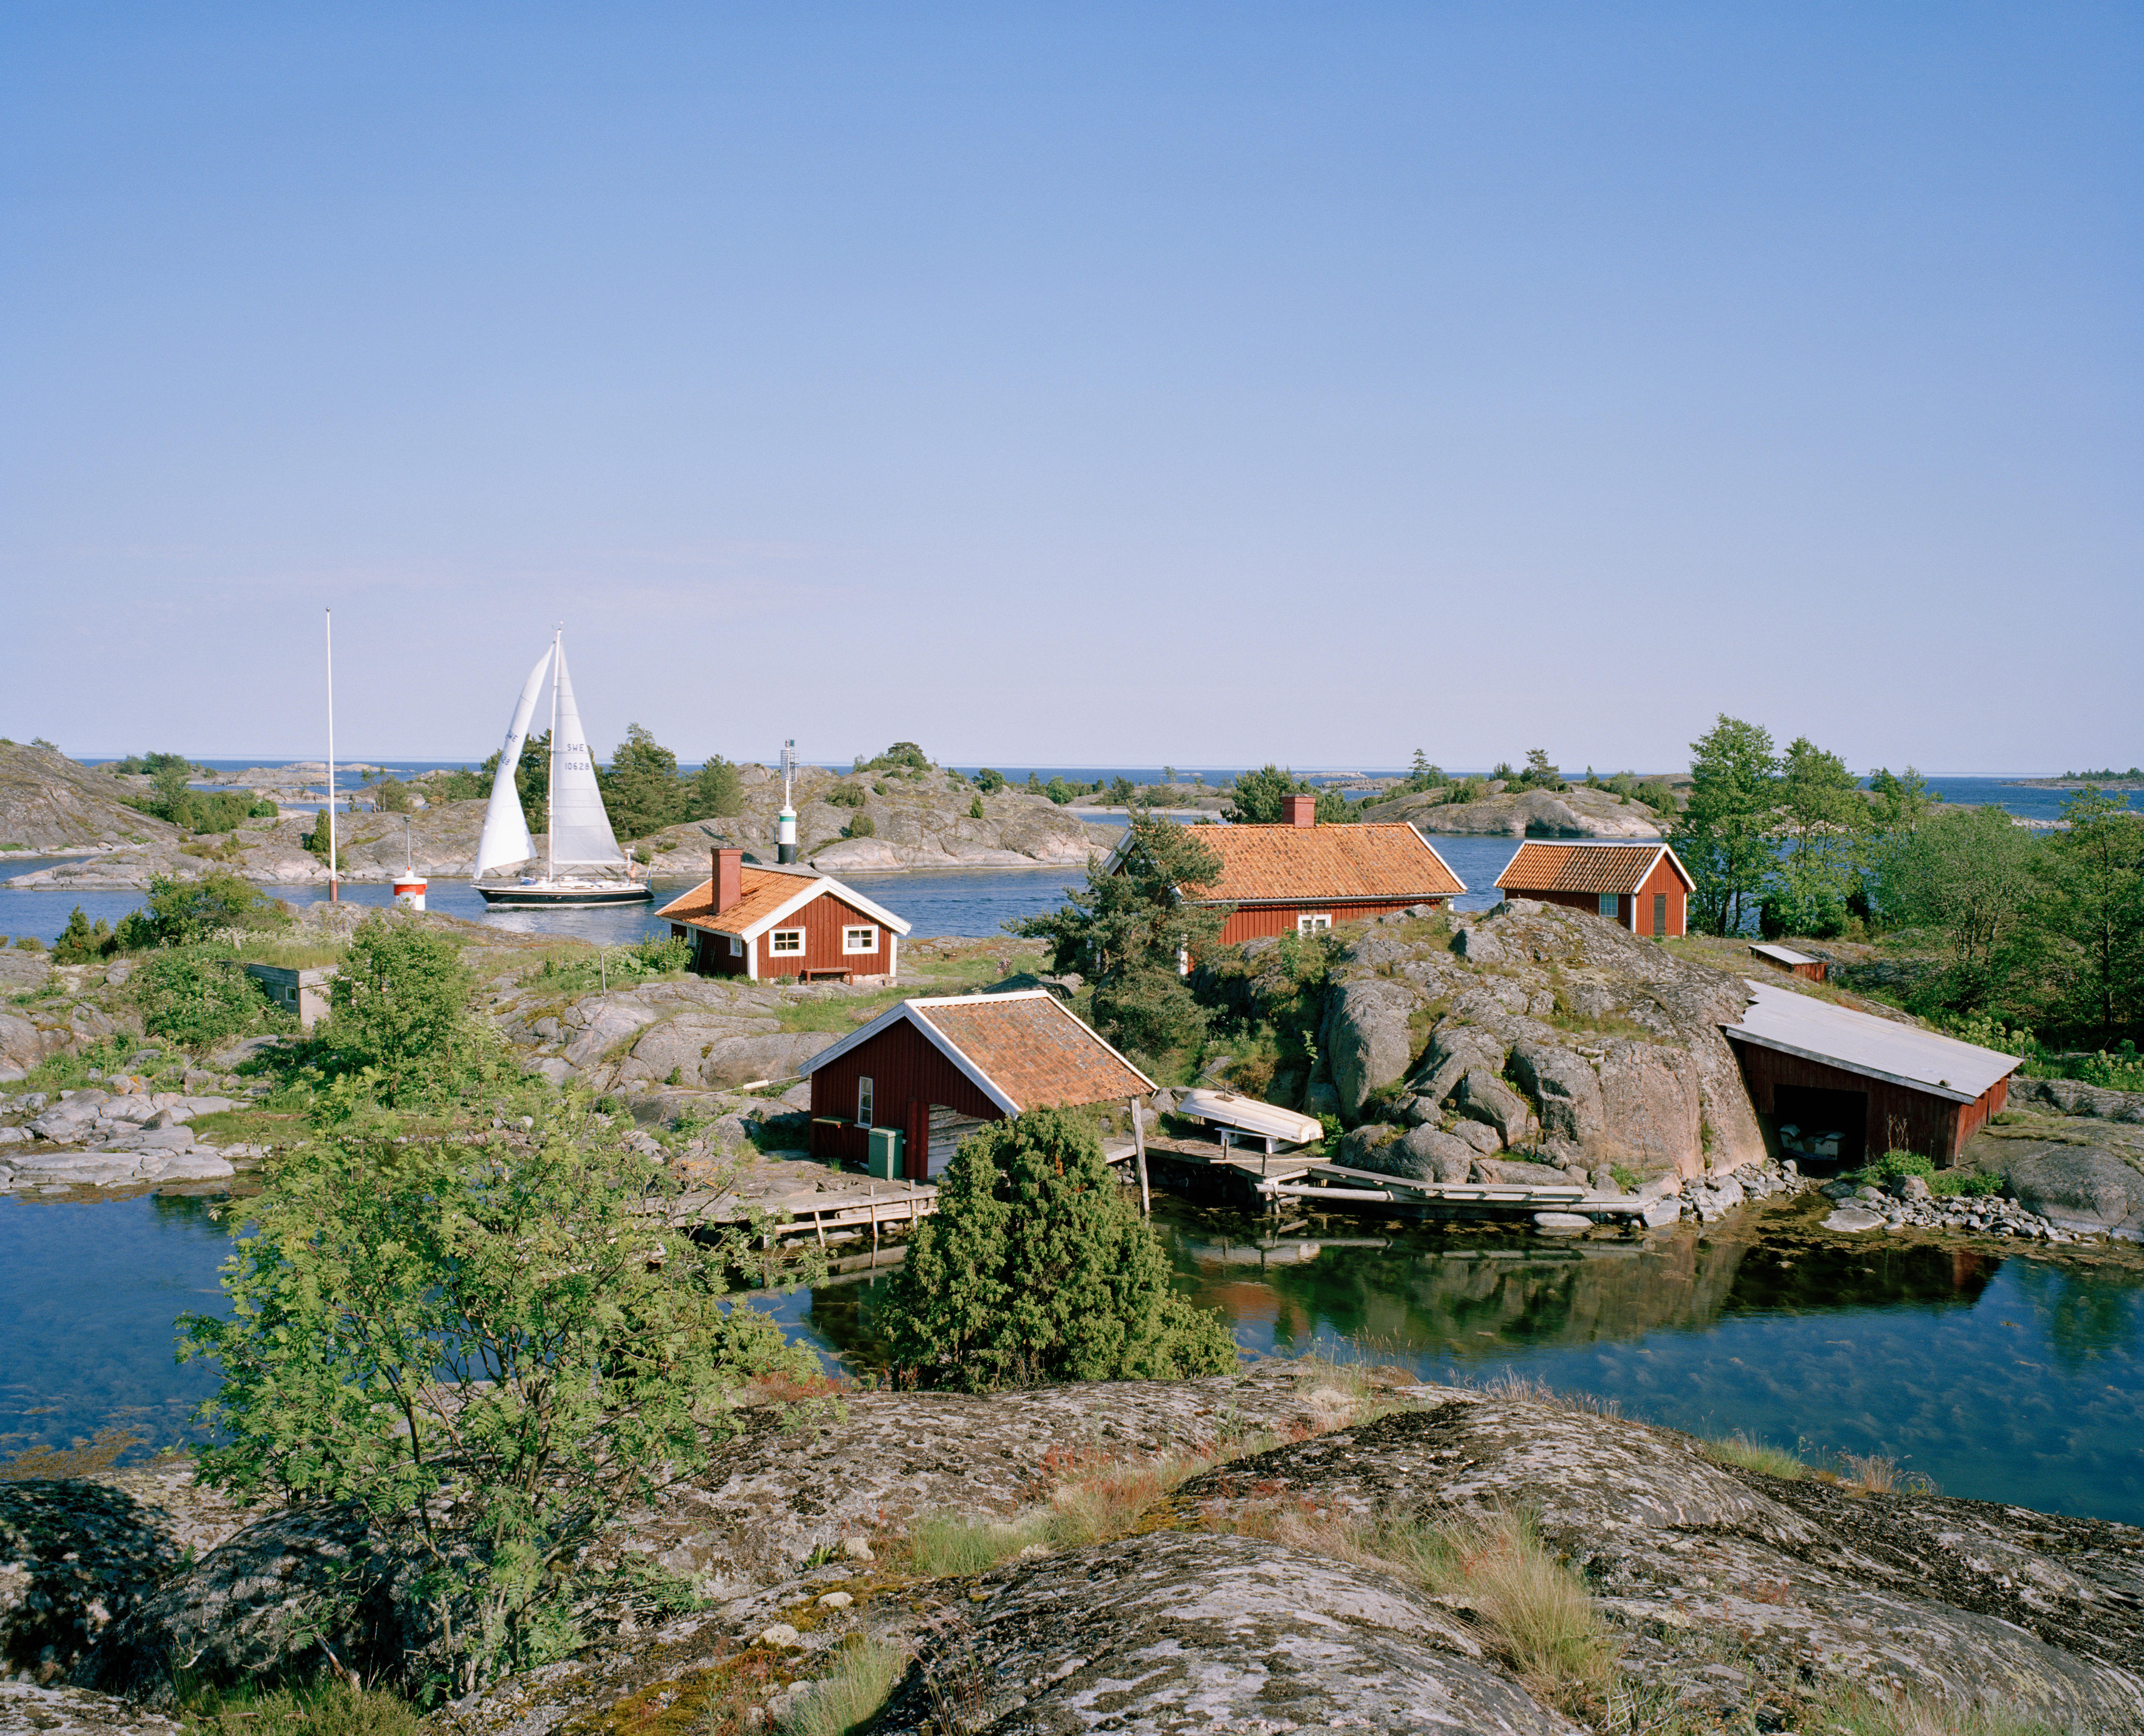 Stockholm archipelago, Sweden (Alamy/PA)